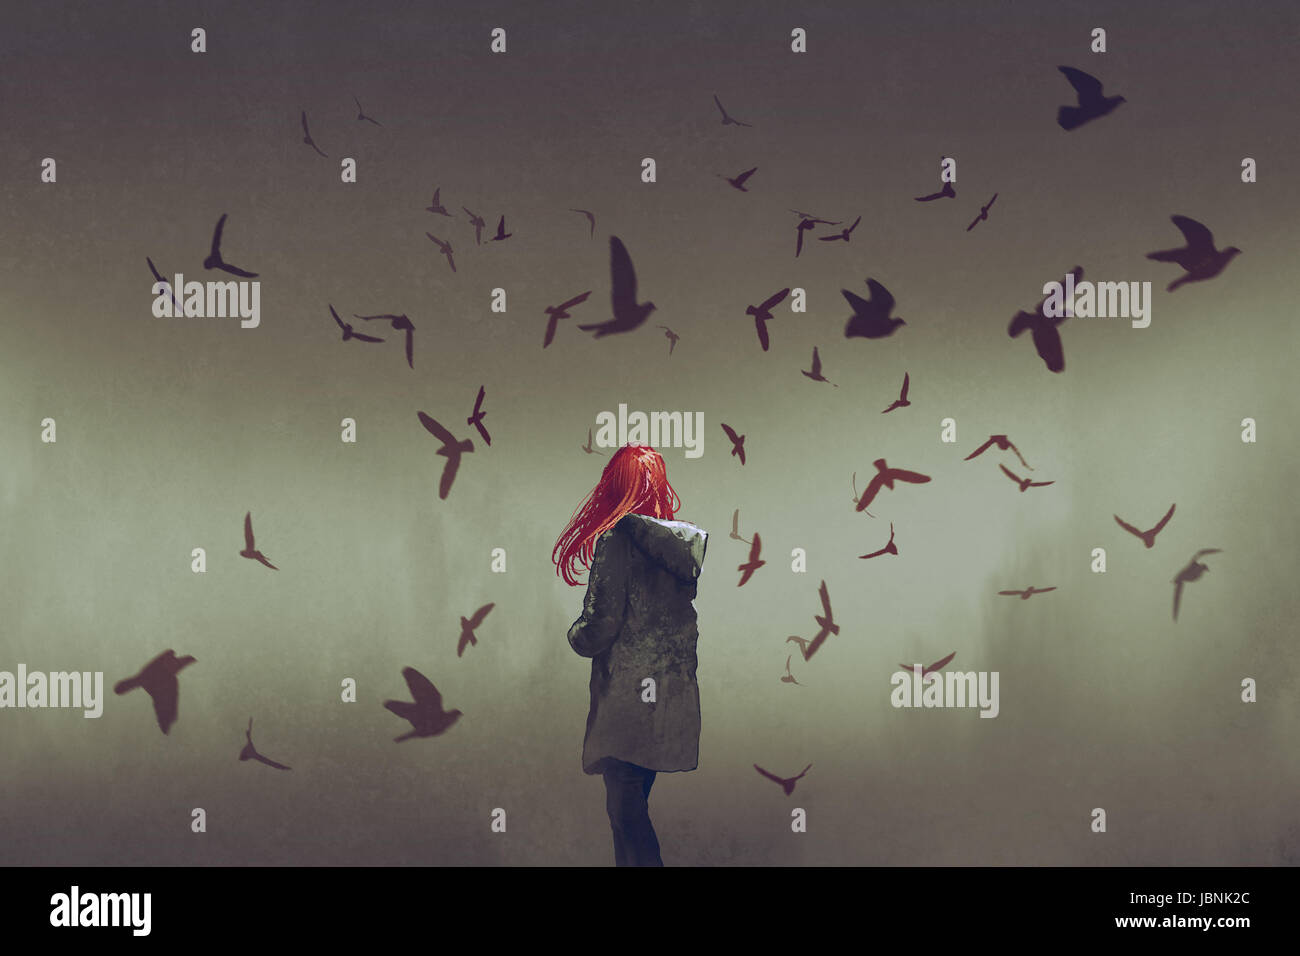 La donna con i capelli rossi in piedi fra gli uccelli, arte digitale stile, illustrazione pittura Foto Stock